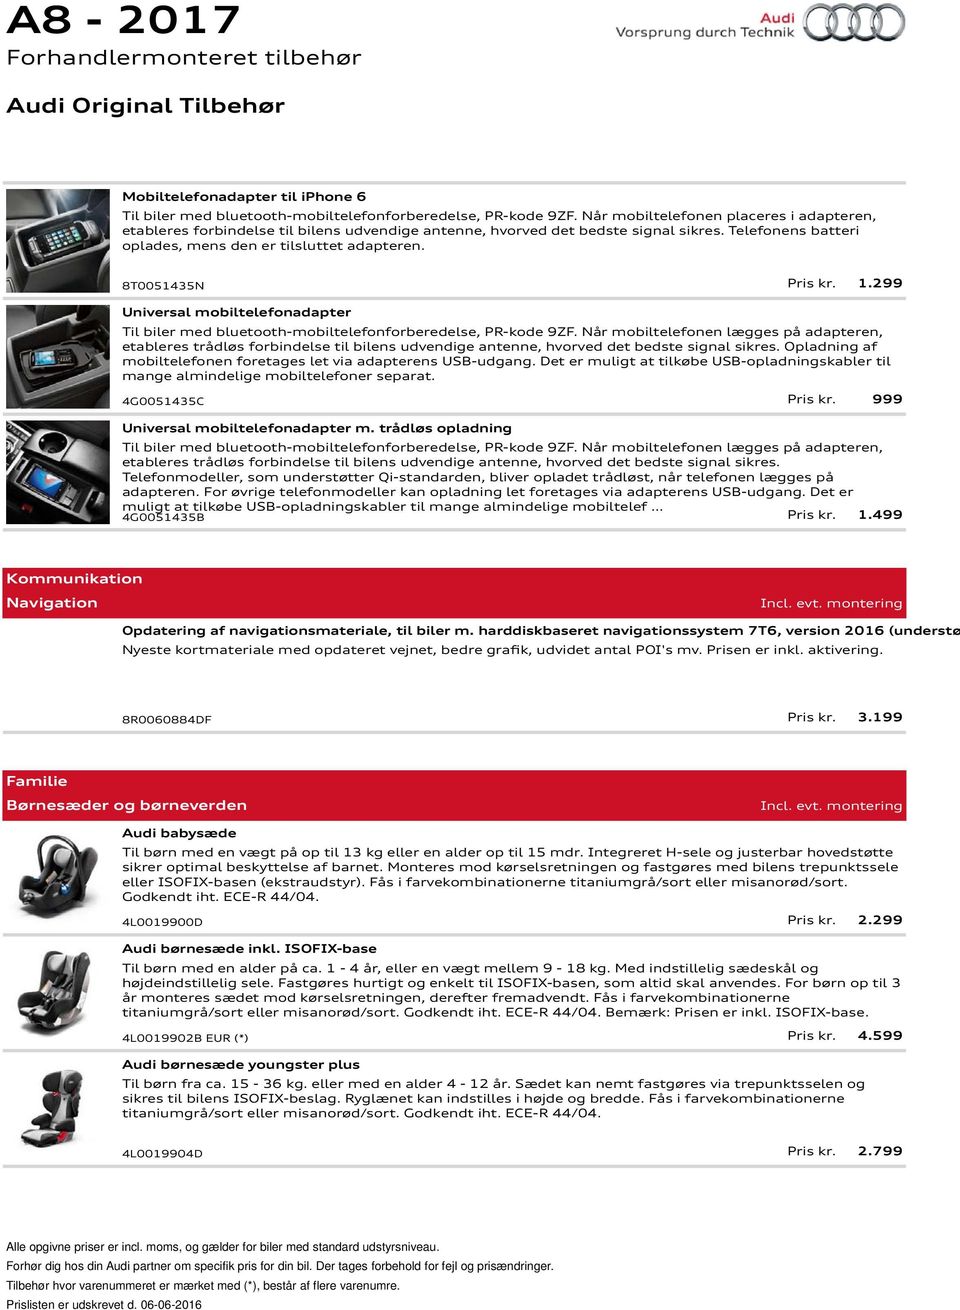 8T0051435N Pris kr. 1.299 Universal mobiltelefonadapter Til biler med bluetooth-mobiltelefonforberedelse, PR-kode 9ZF.